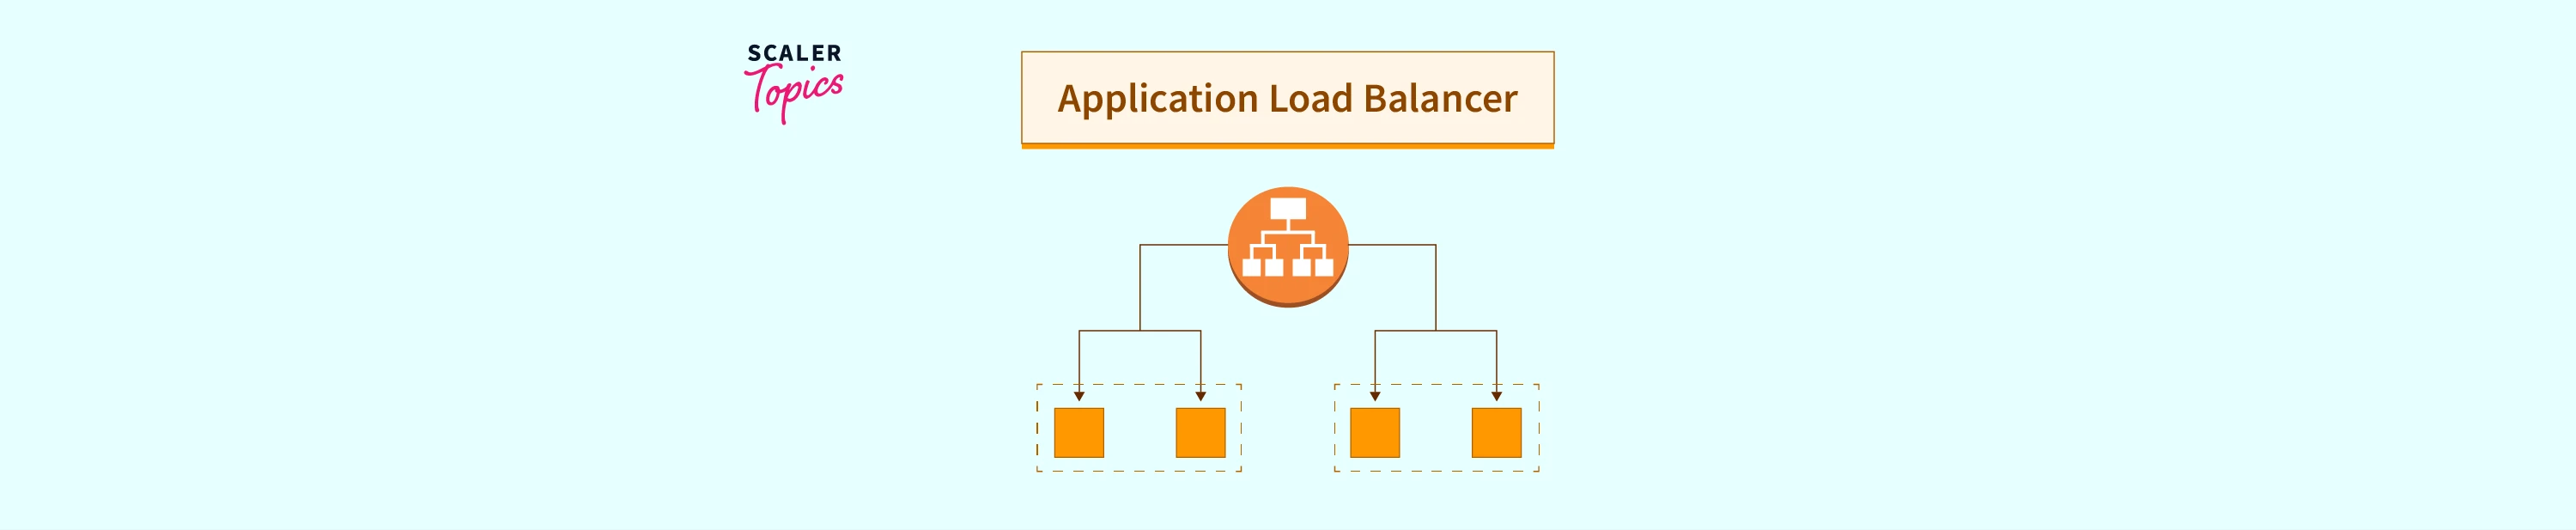 Application Load Balancer (ALB) - Scaler Topics